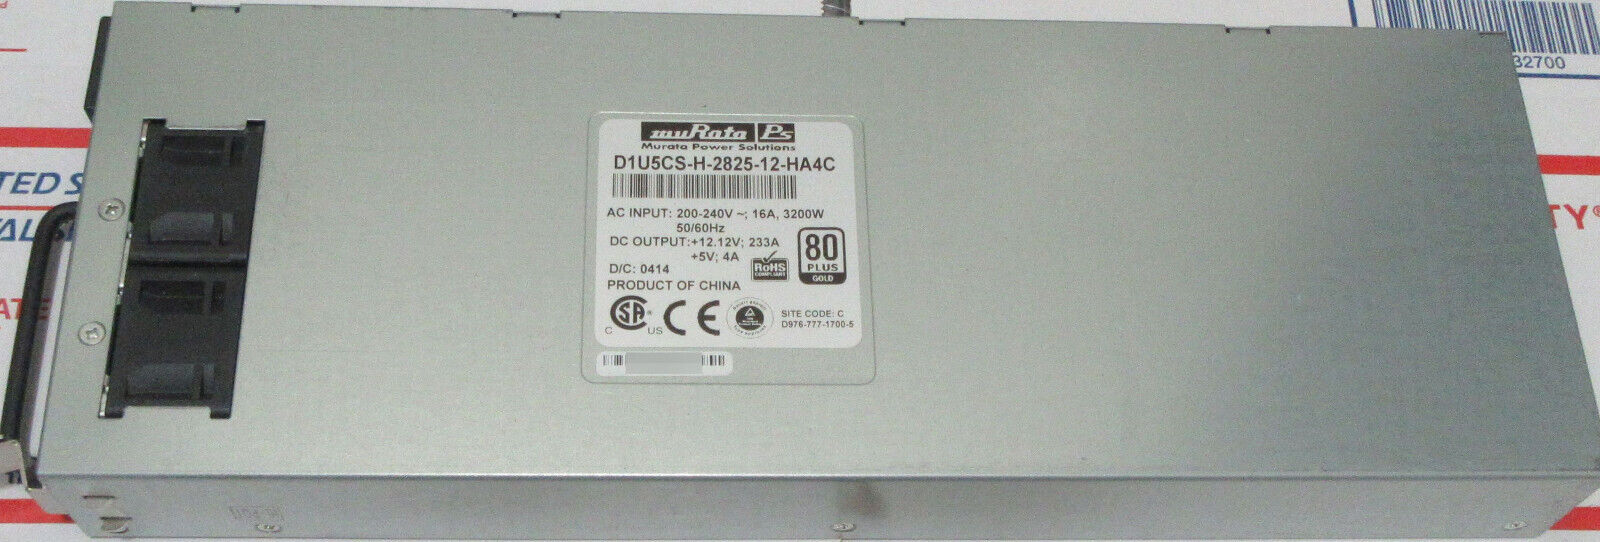 Genuine Murata D1U5CS-H-2825-12-HA4C 3200W 80-Plus Gold Switching Power Supply